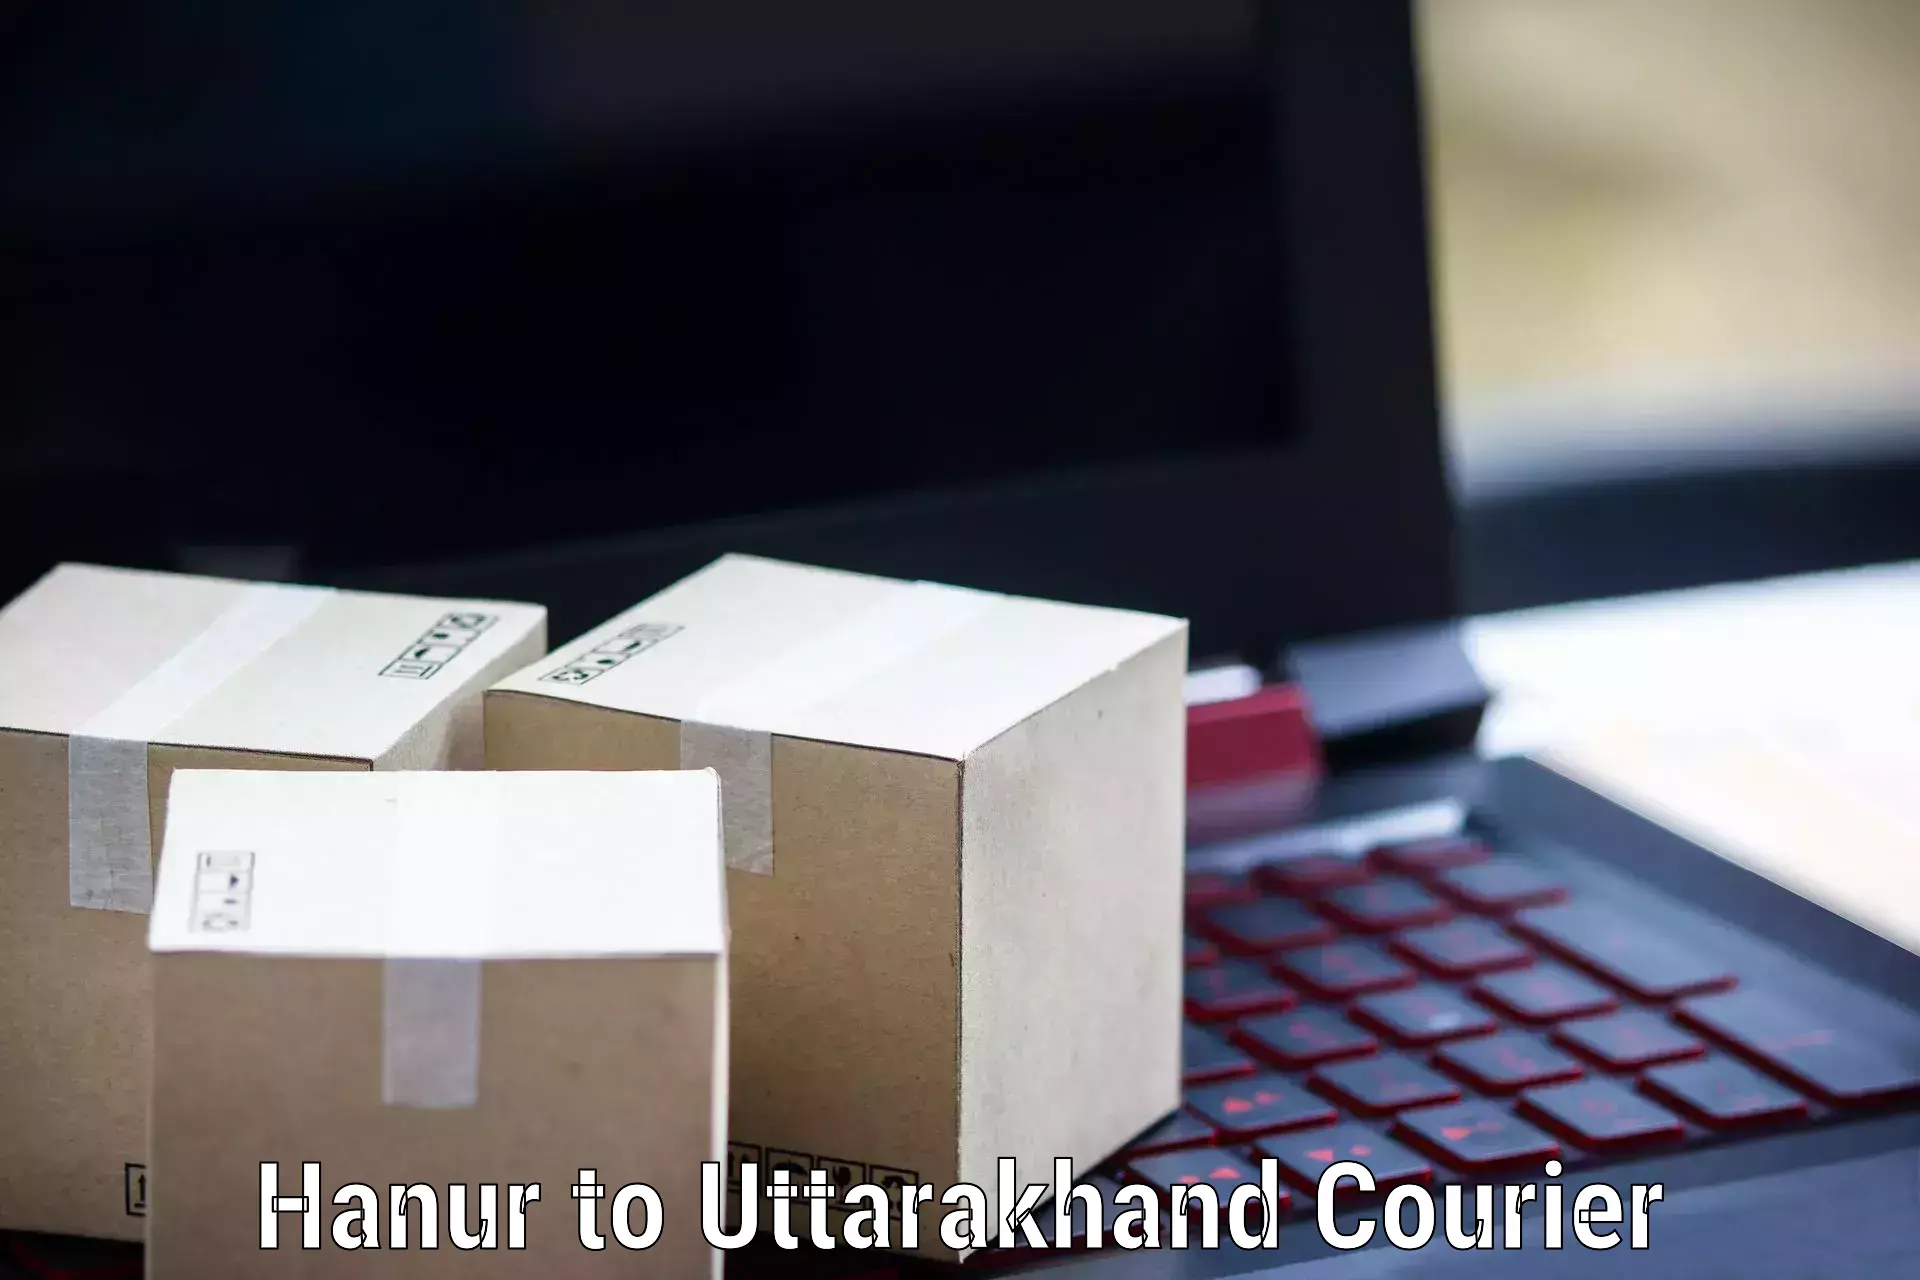 Comprehensive delivery network Hanur to Uttarakhand